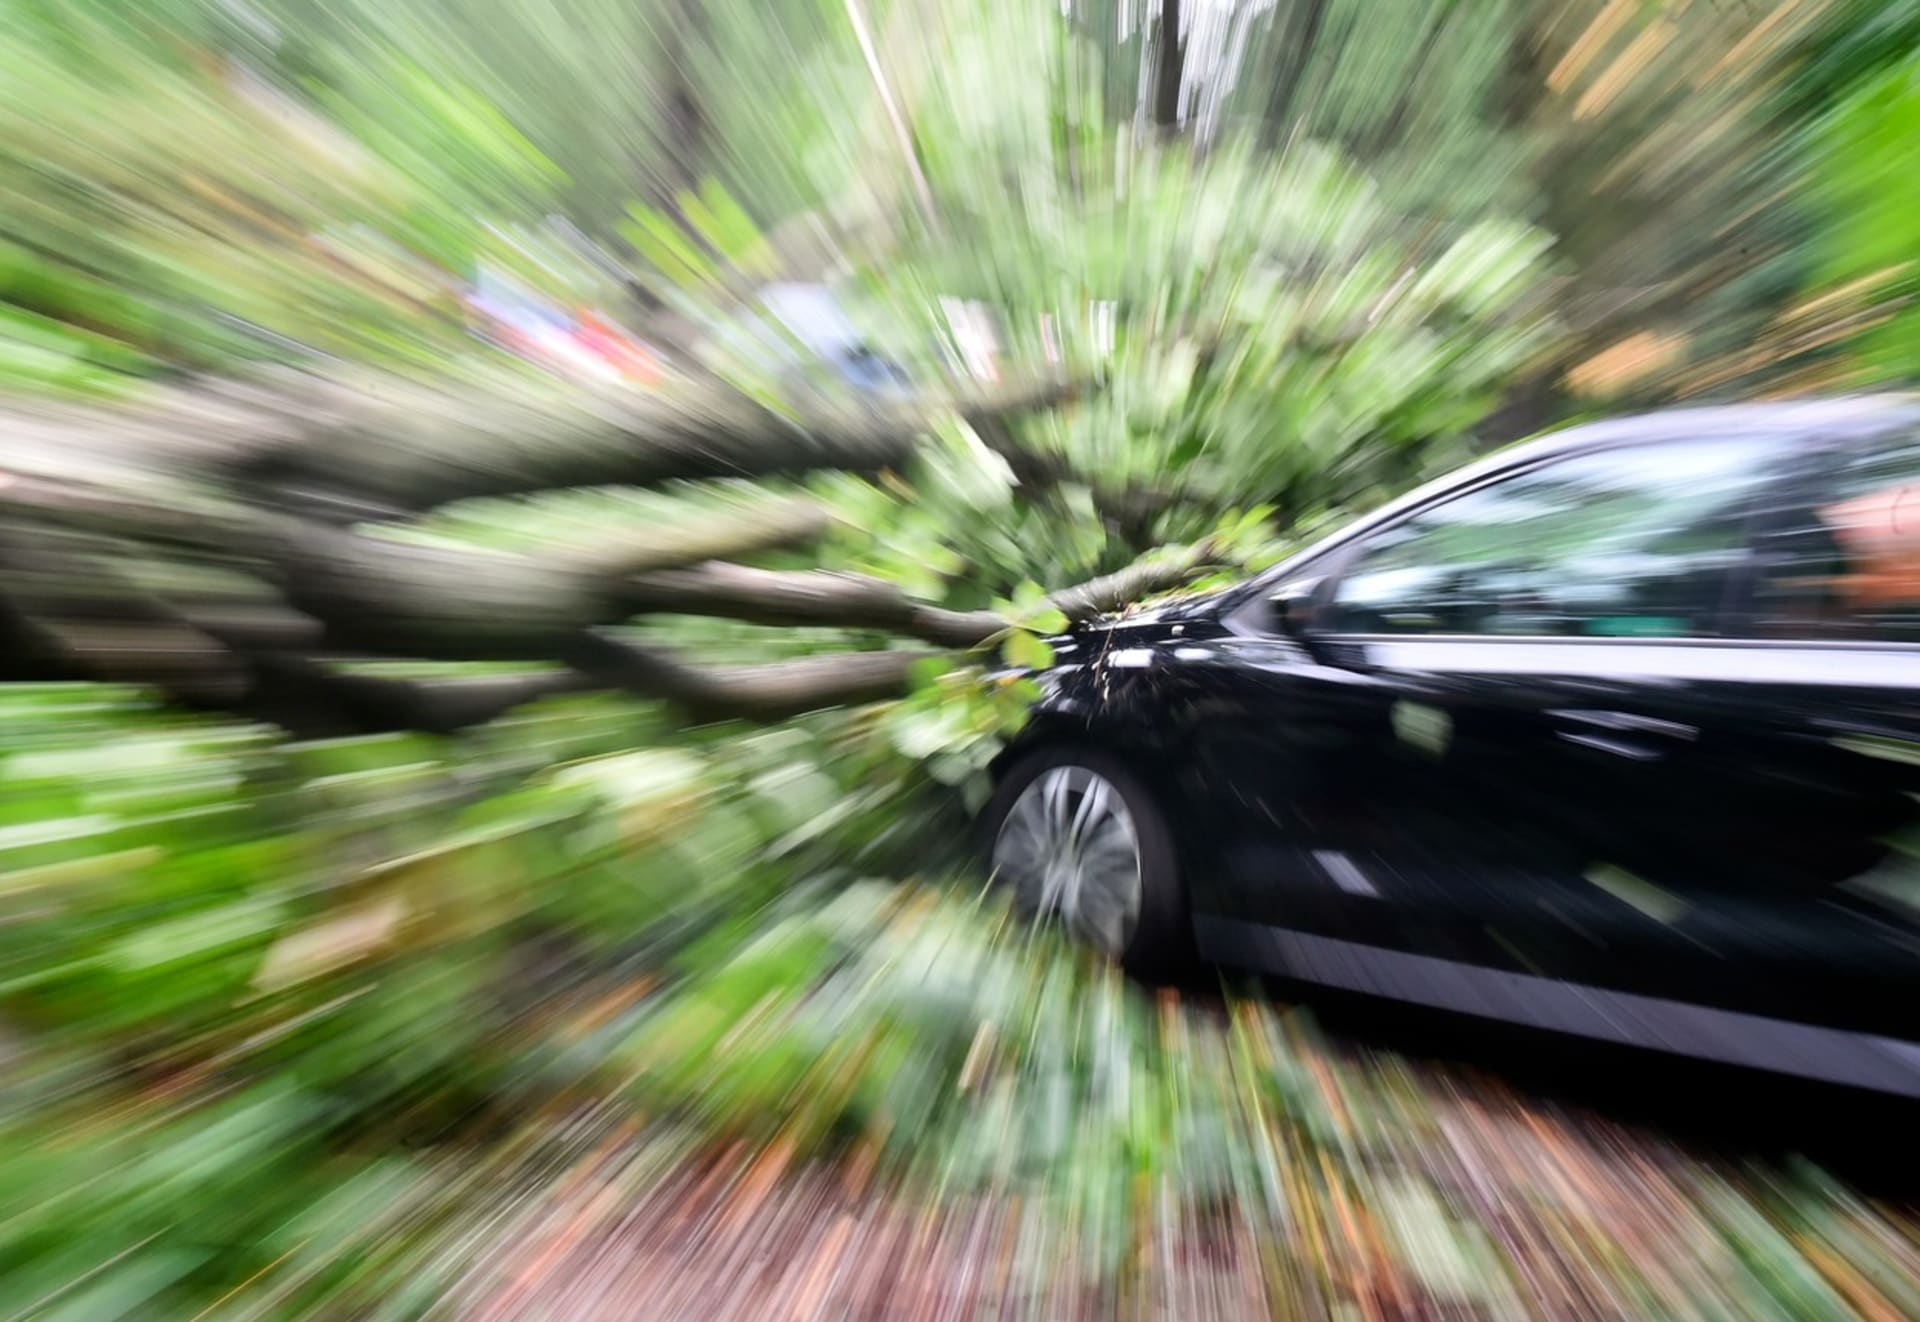 Pád stromu na jedoucí auto může mít fatální následky. Mrzutá je ale i nehoda na místě.